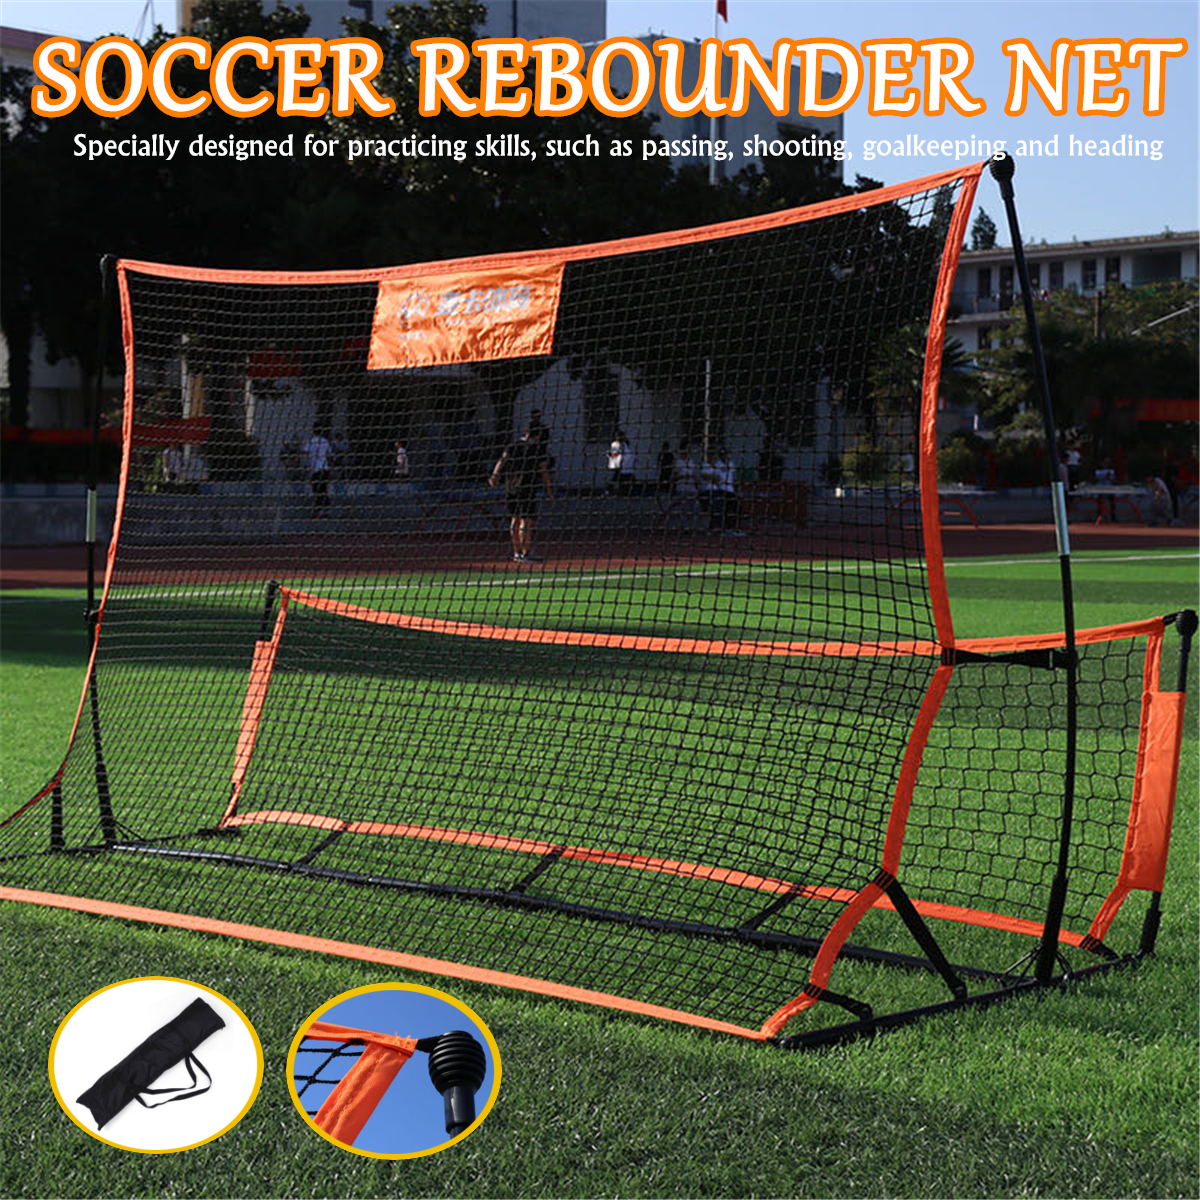 1821M-Soccer-Rebounder-Net-Portable-Folding-Football-Goal-Shoot-Training-Equipment-Outdoor-Sport-1817403-1